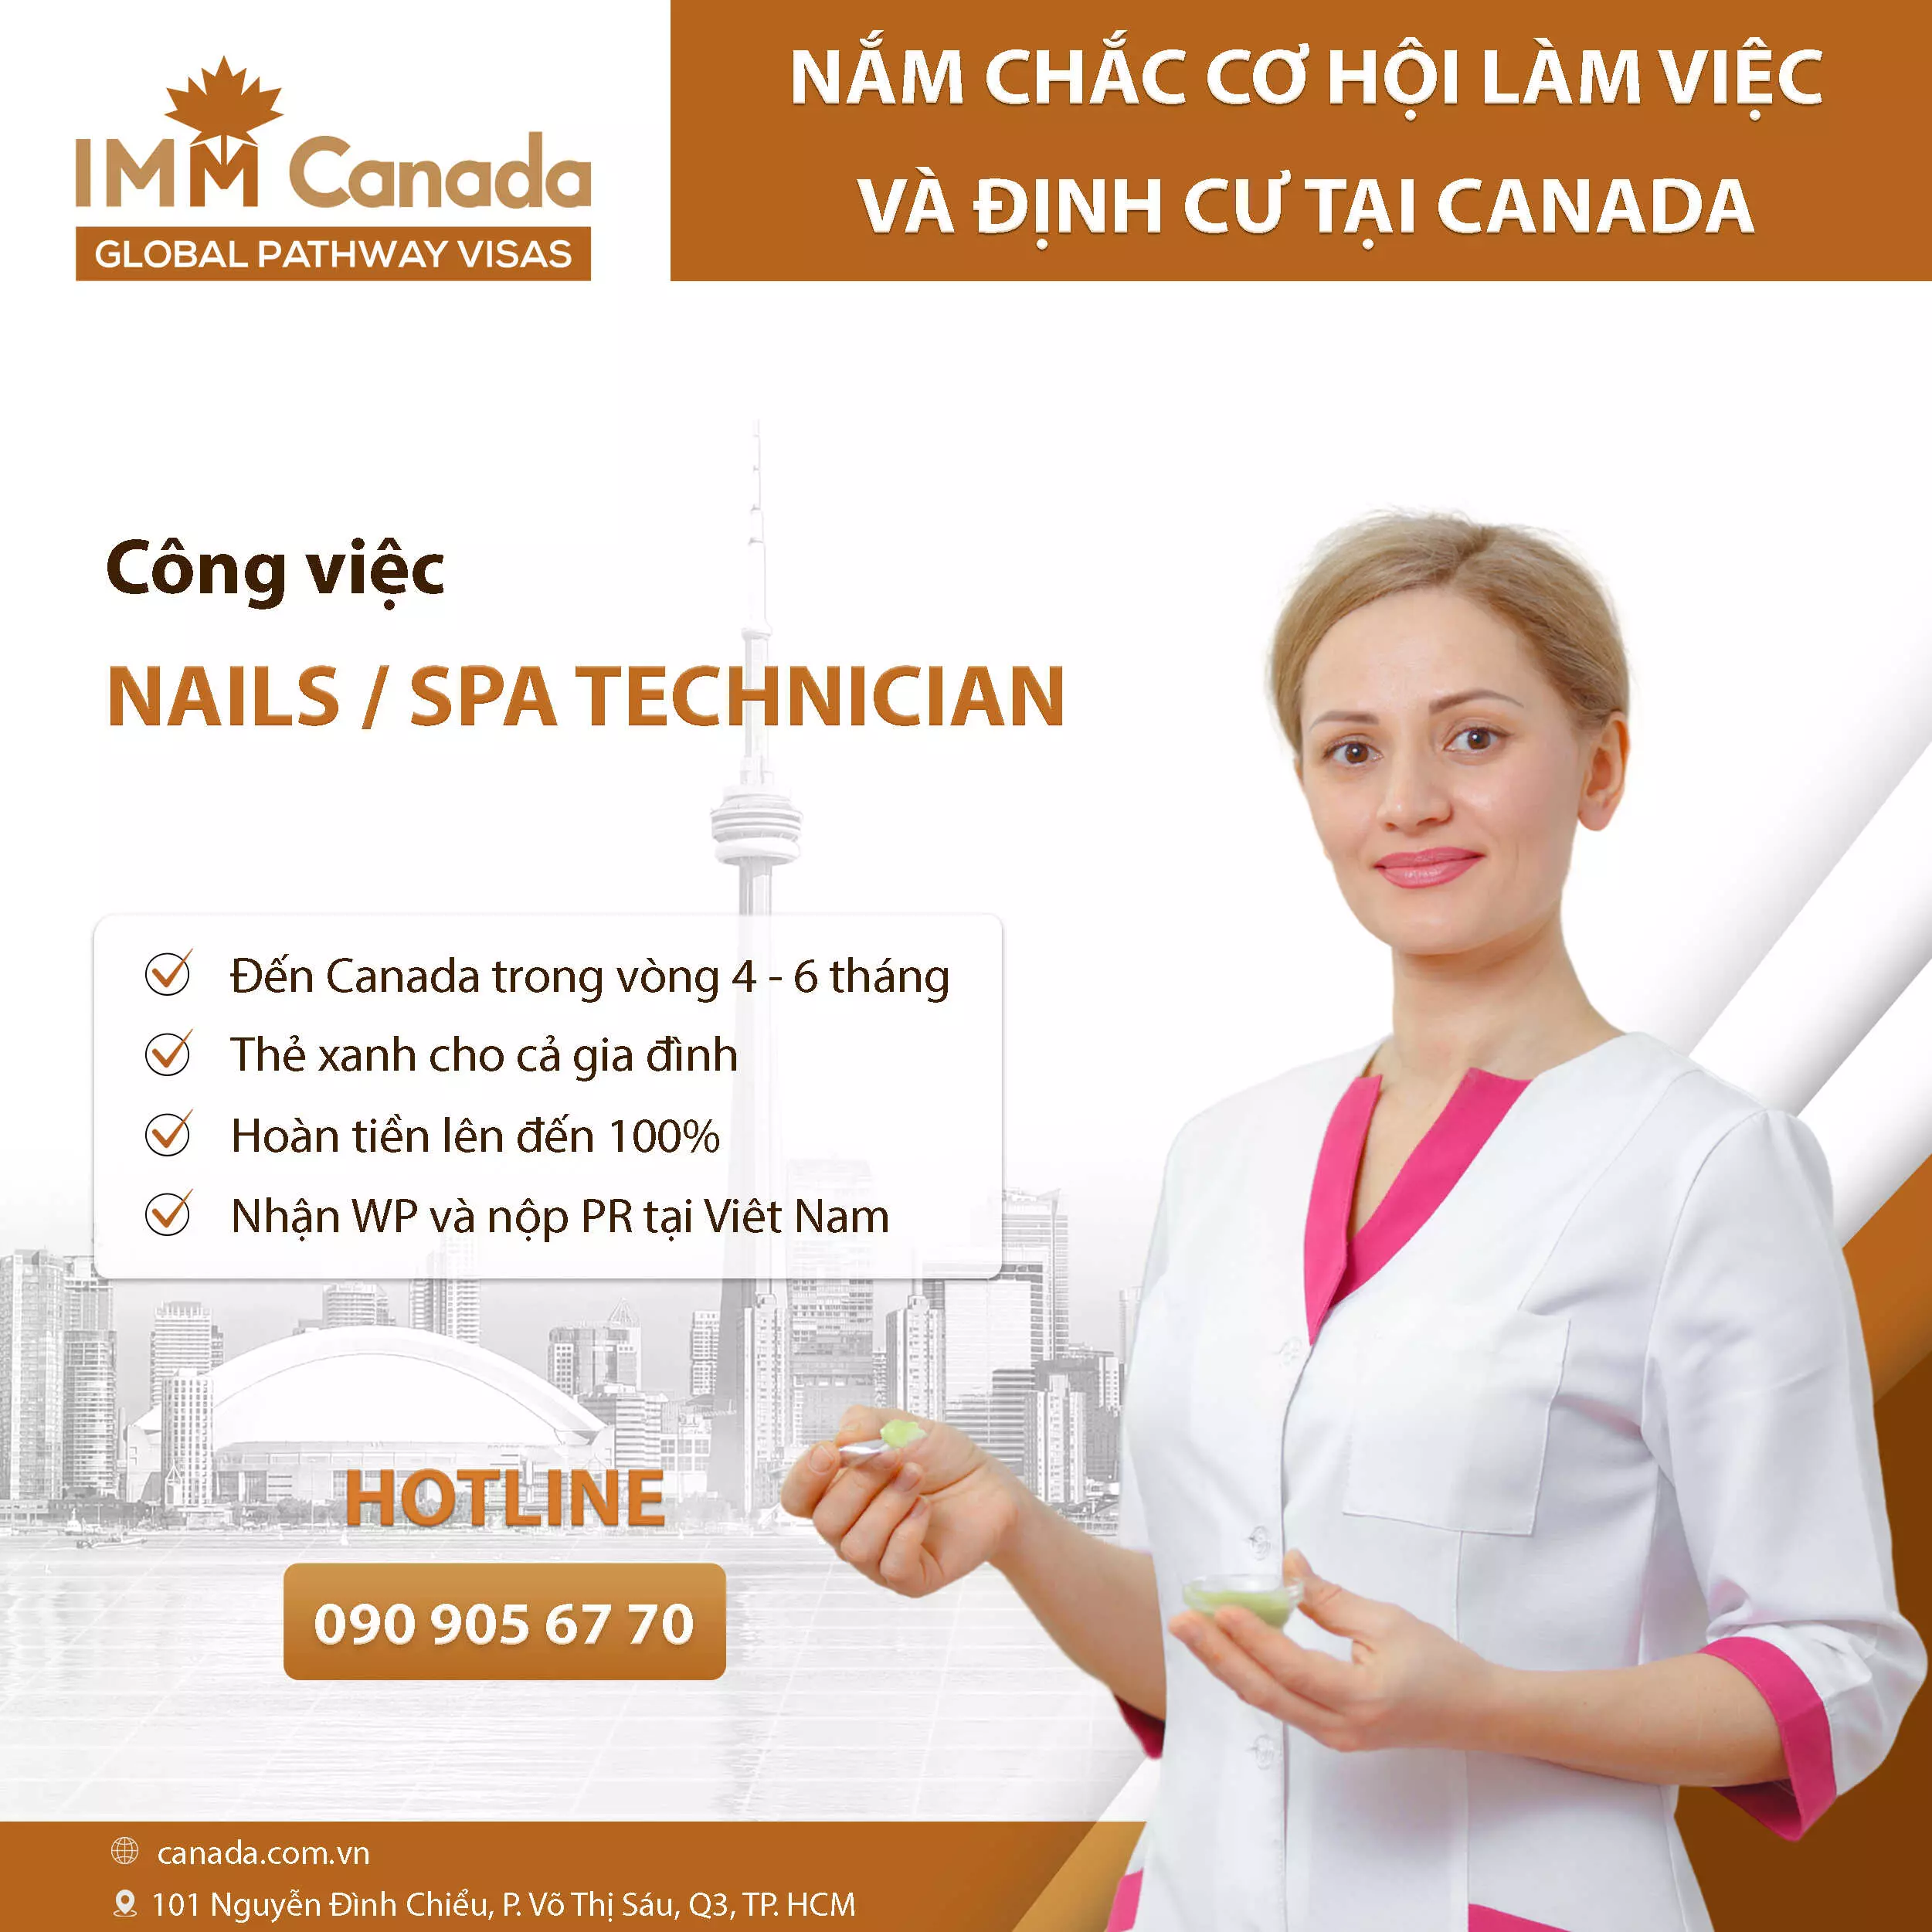 Nail Technician - Kỹ thuật viên nail